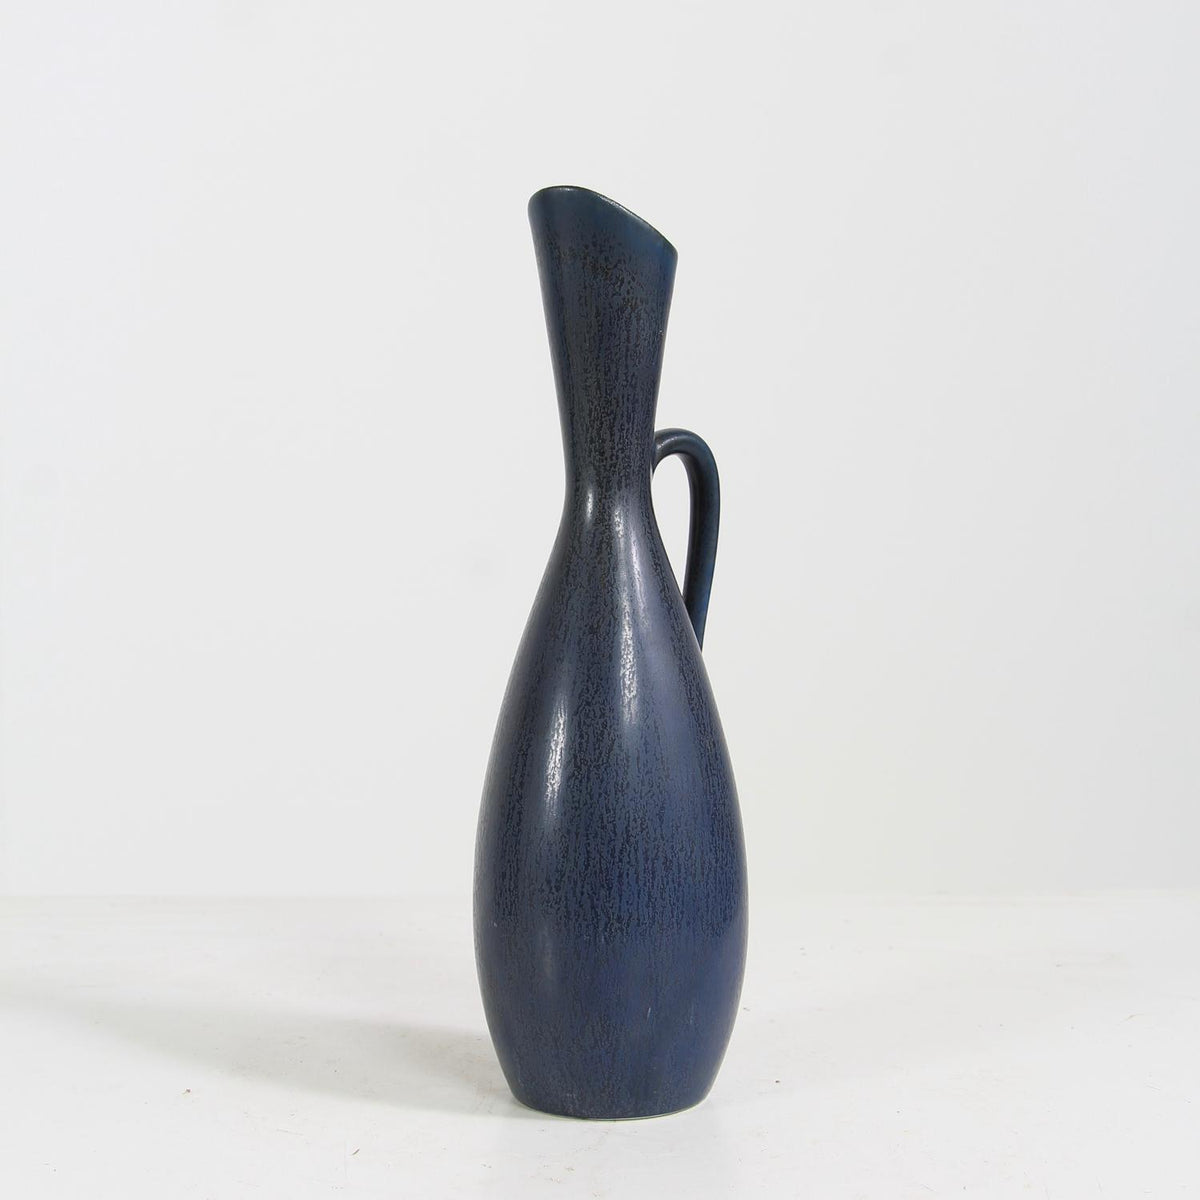 Fabulous Dark Blue 1950s Vase Designed by Carl-Harry Stålhane